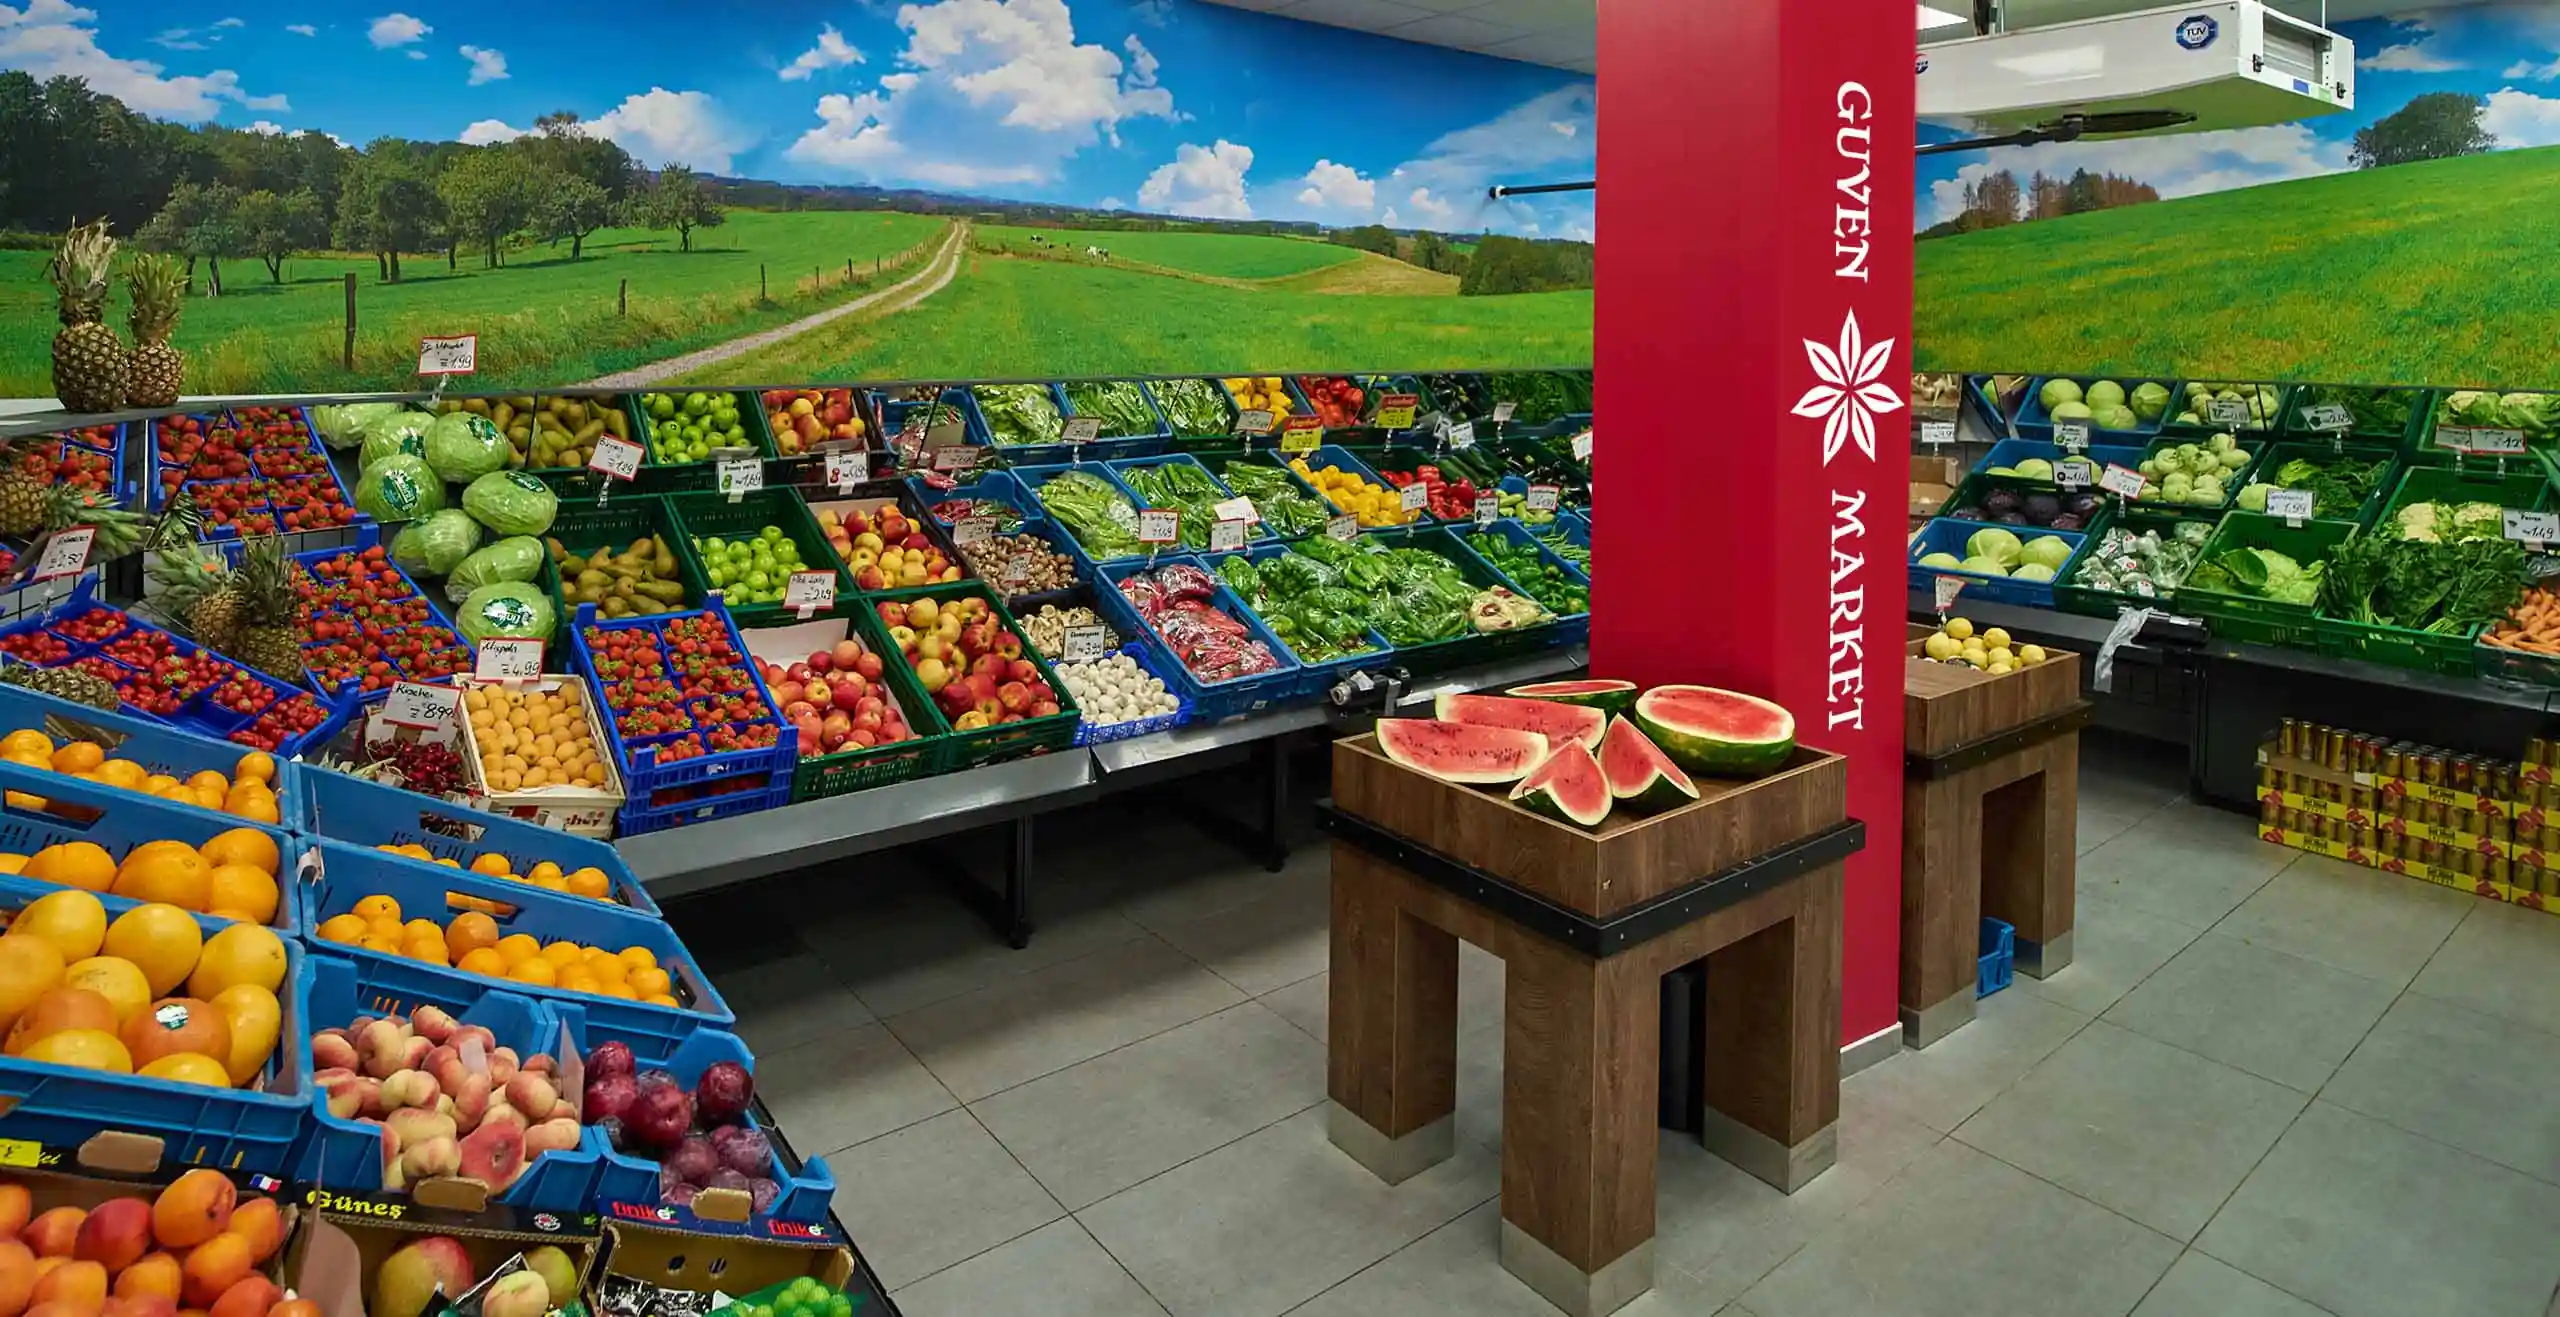 Frisches Obst und Gemüse im gekühlten Kabinett des Güven Market auf Gut Buchenhofen